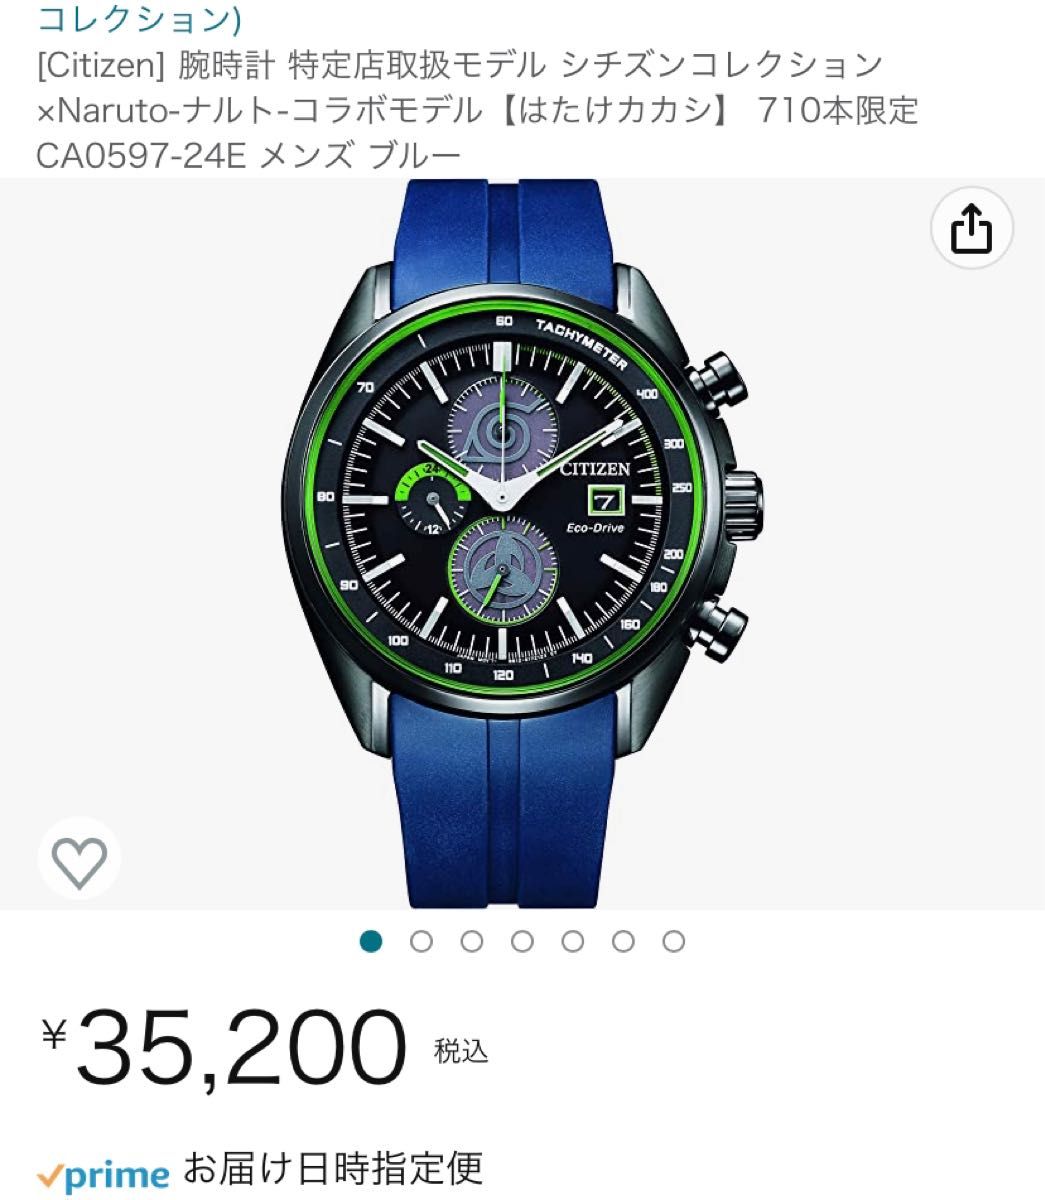 WEB限定カラー Citizen] 海外限定モデル 定価4.3万円 ブルー/シルバー